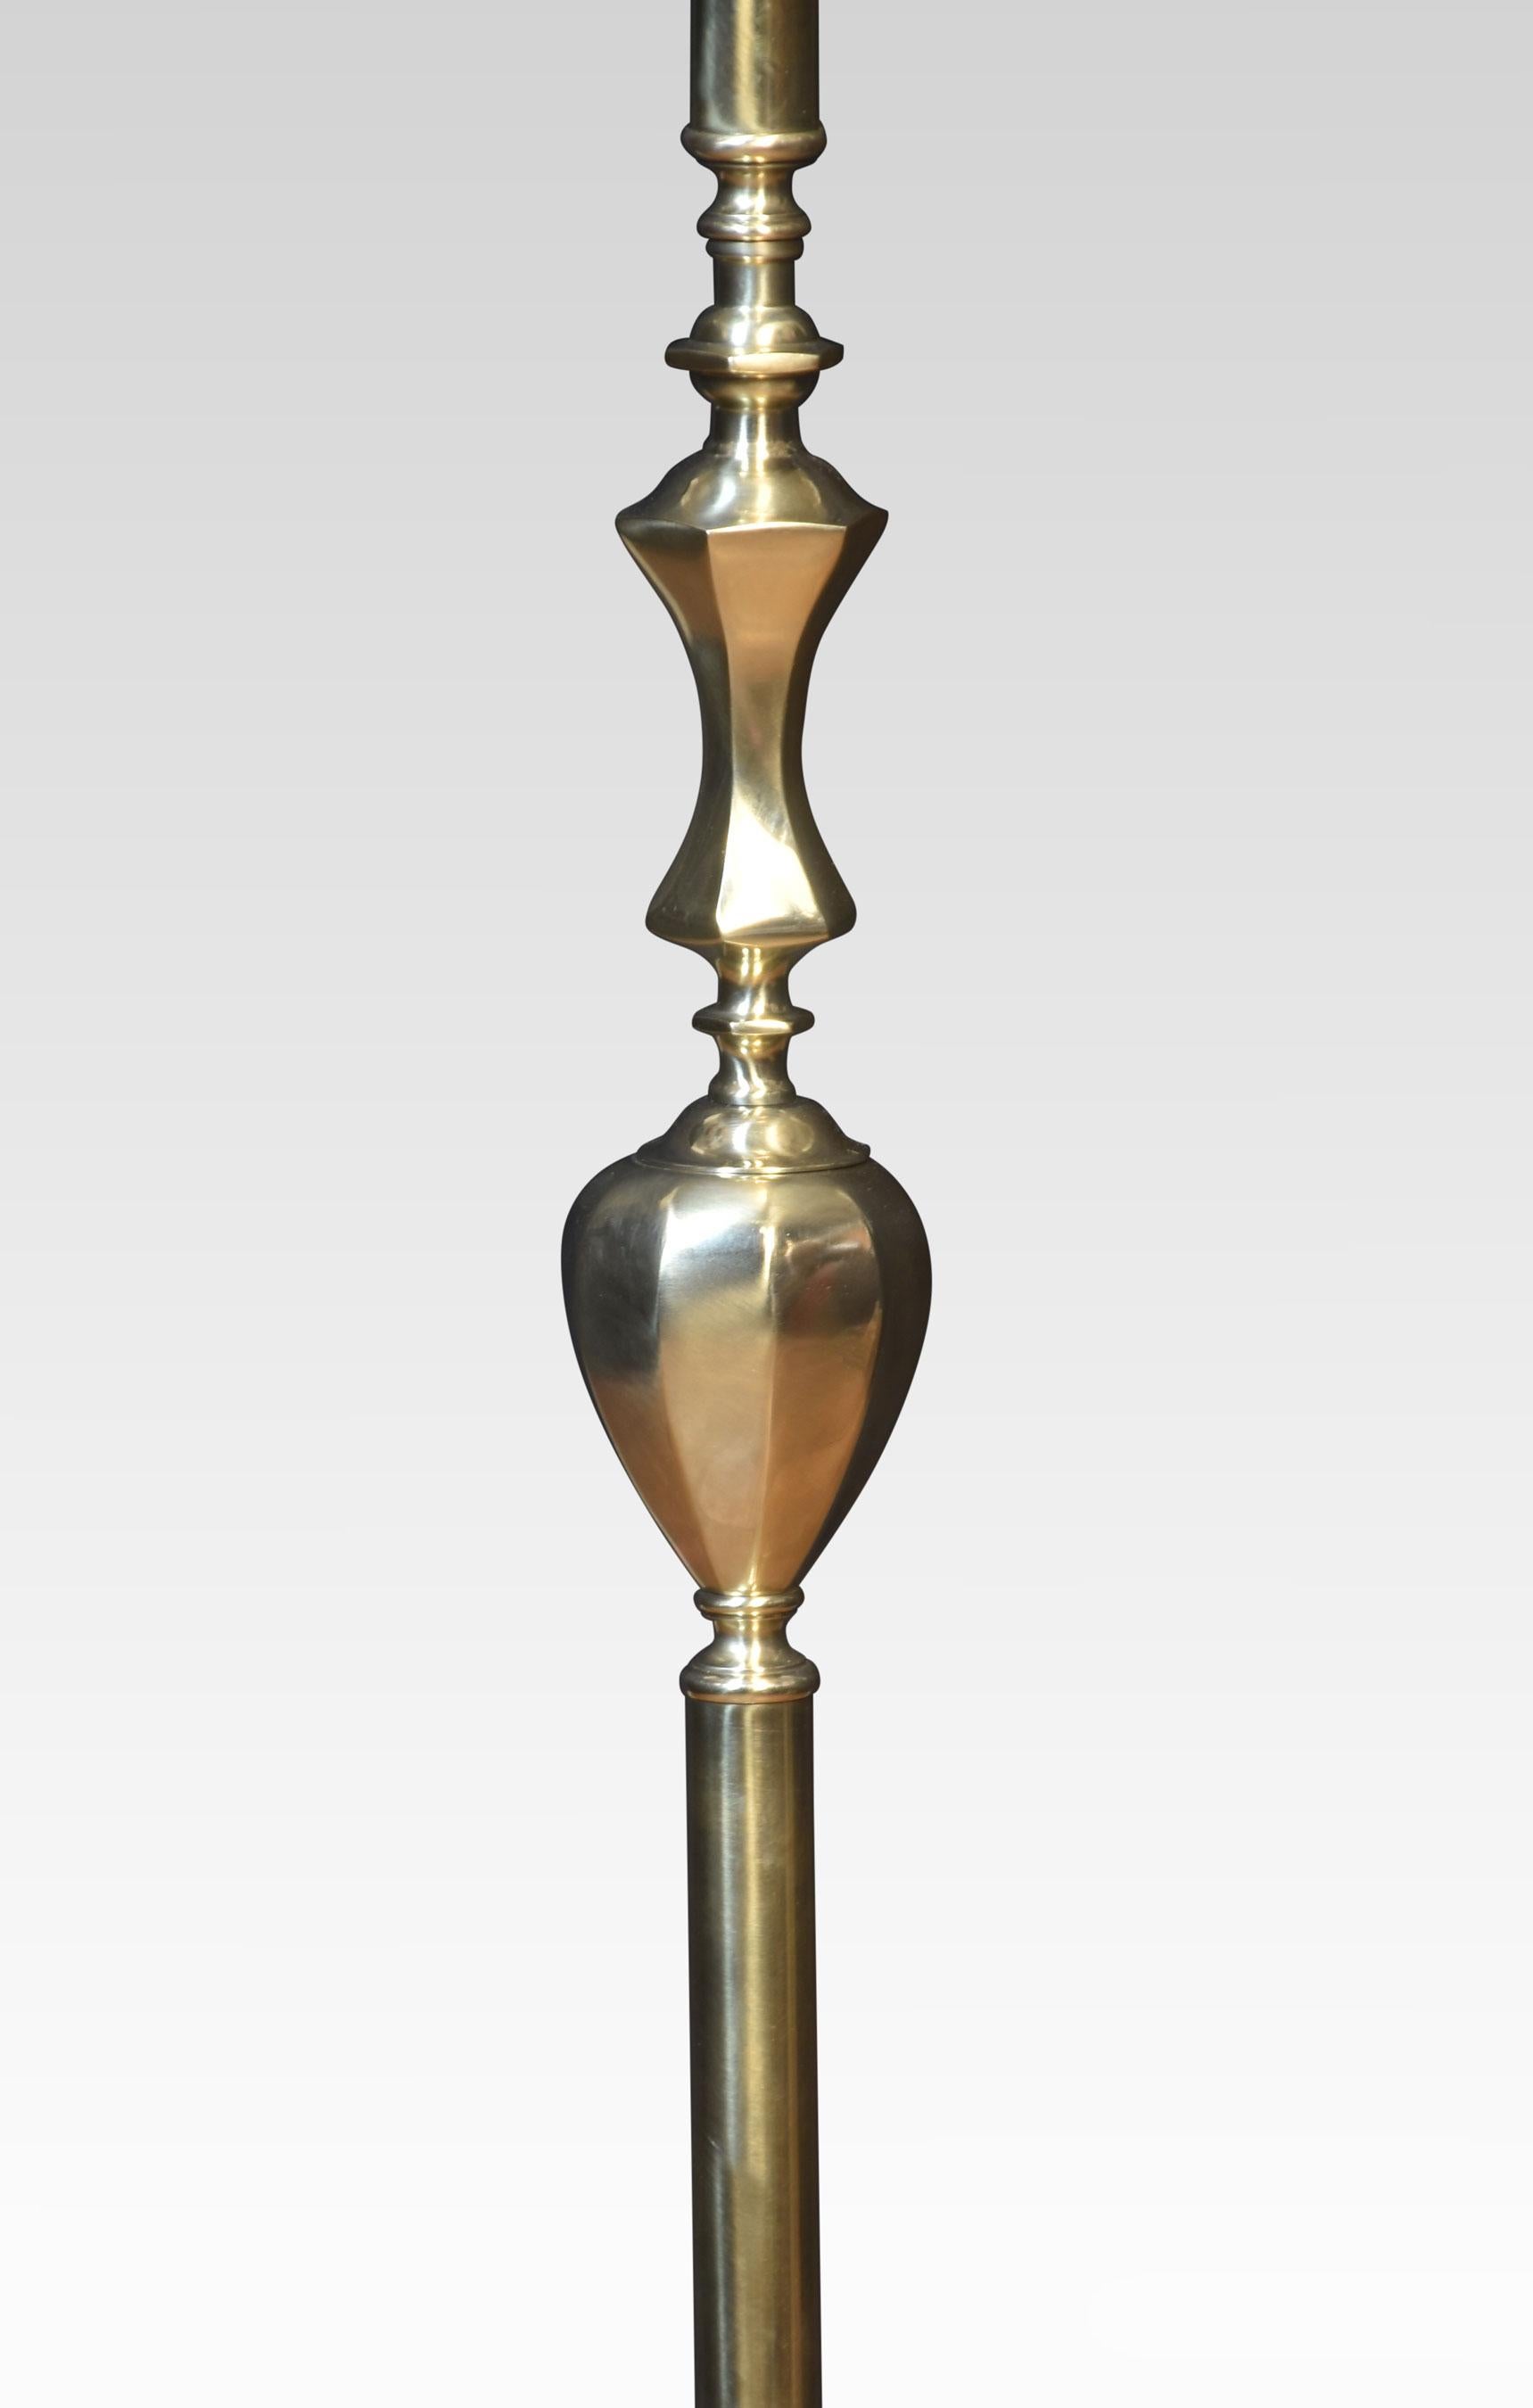 Lampe standard en laiton, dont la tige bien fondue s'élève sur une base à gradins.
Dimensions
Hauteur 57,5 pouces
Largeur 10 pouces
Profondeur 10 pouces